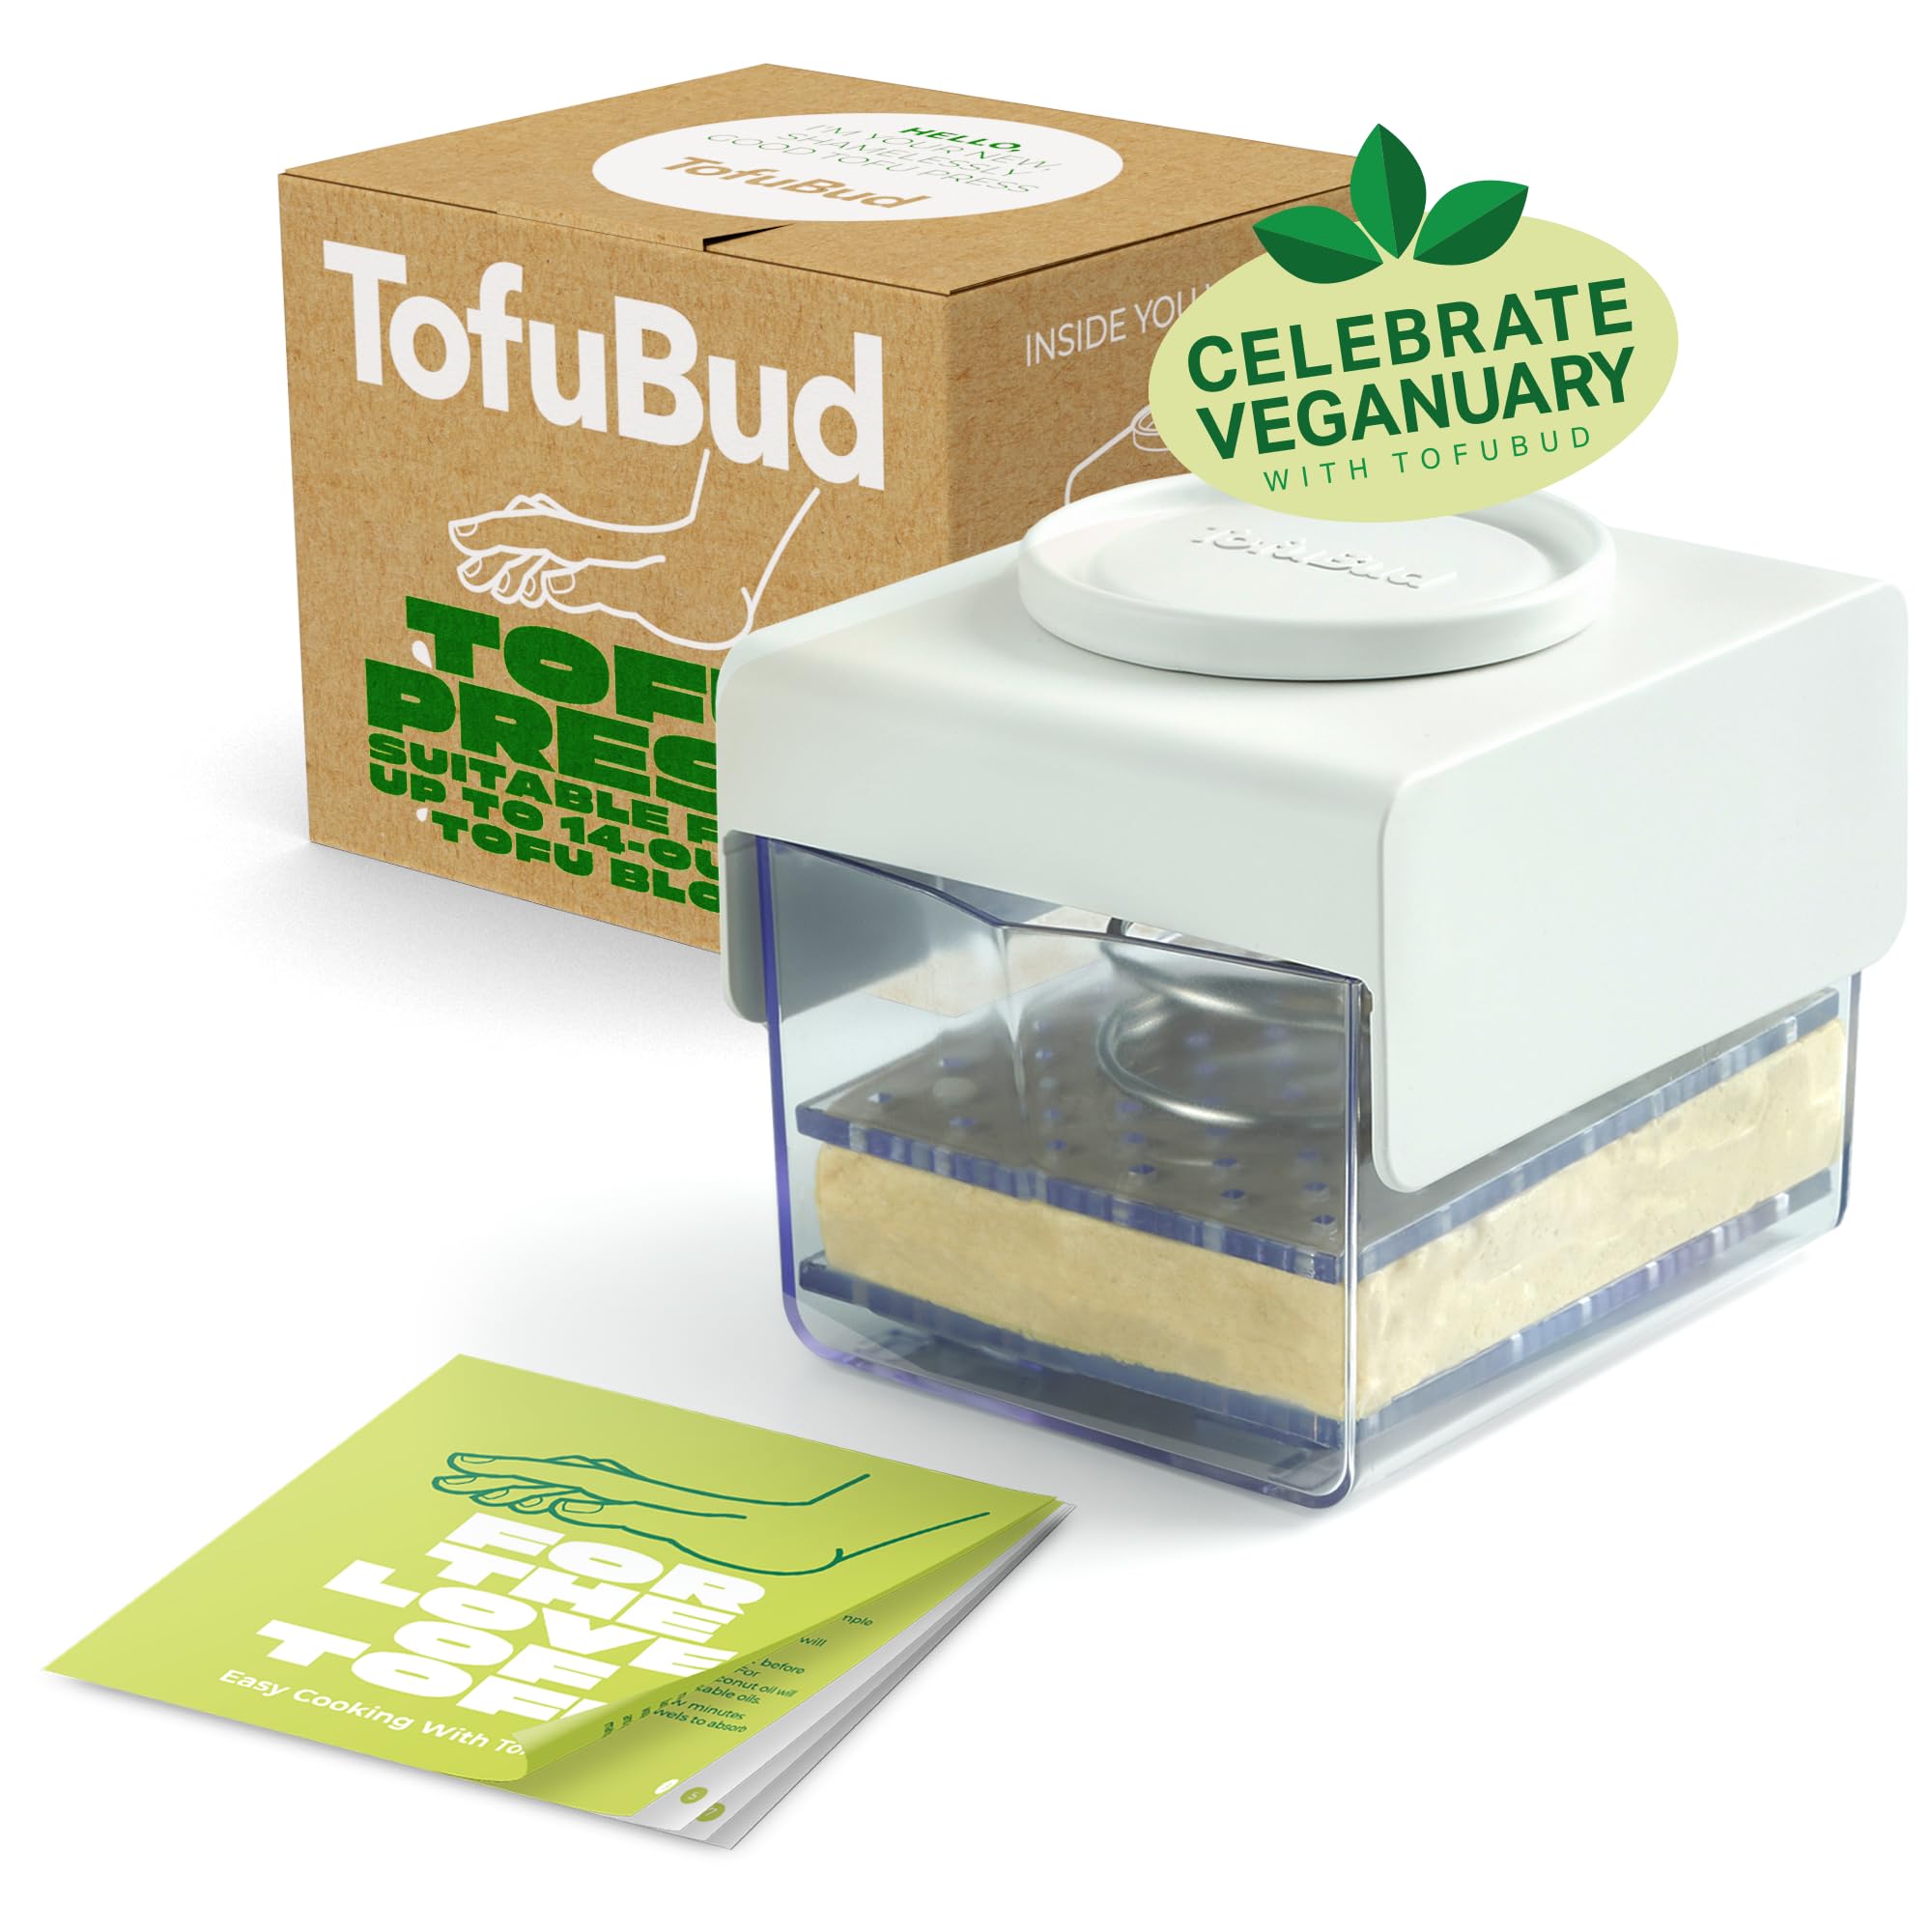 TofuBud Tofu Press